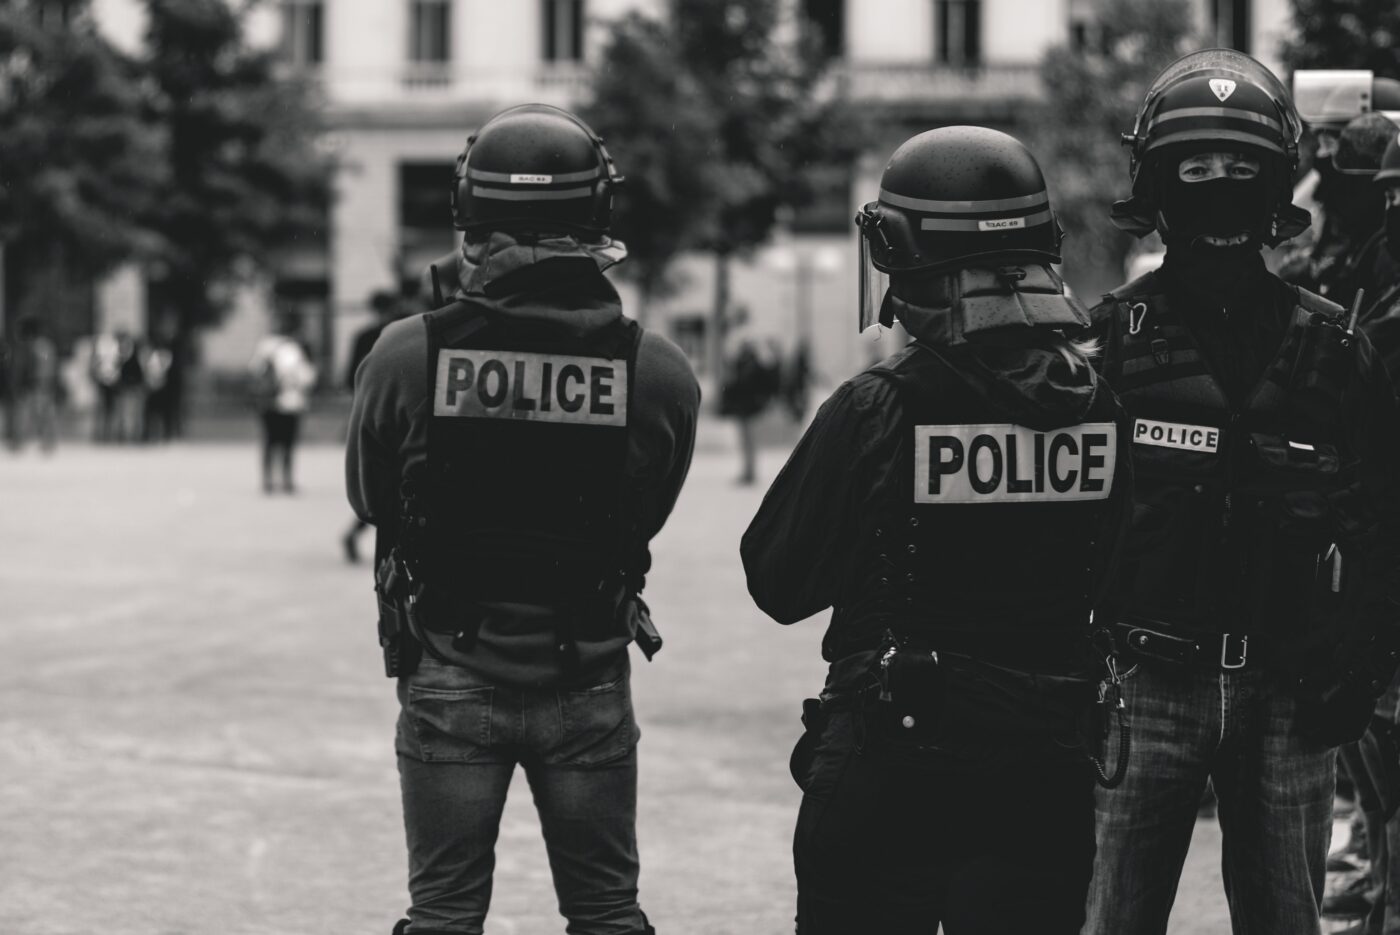 Duas pessoas de costas para a câmera vestem uniforme de polícia com a indicação "police", palavra inglesa para polícia